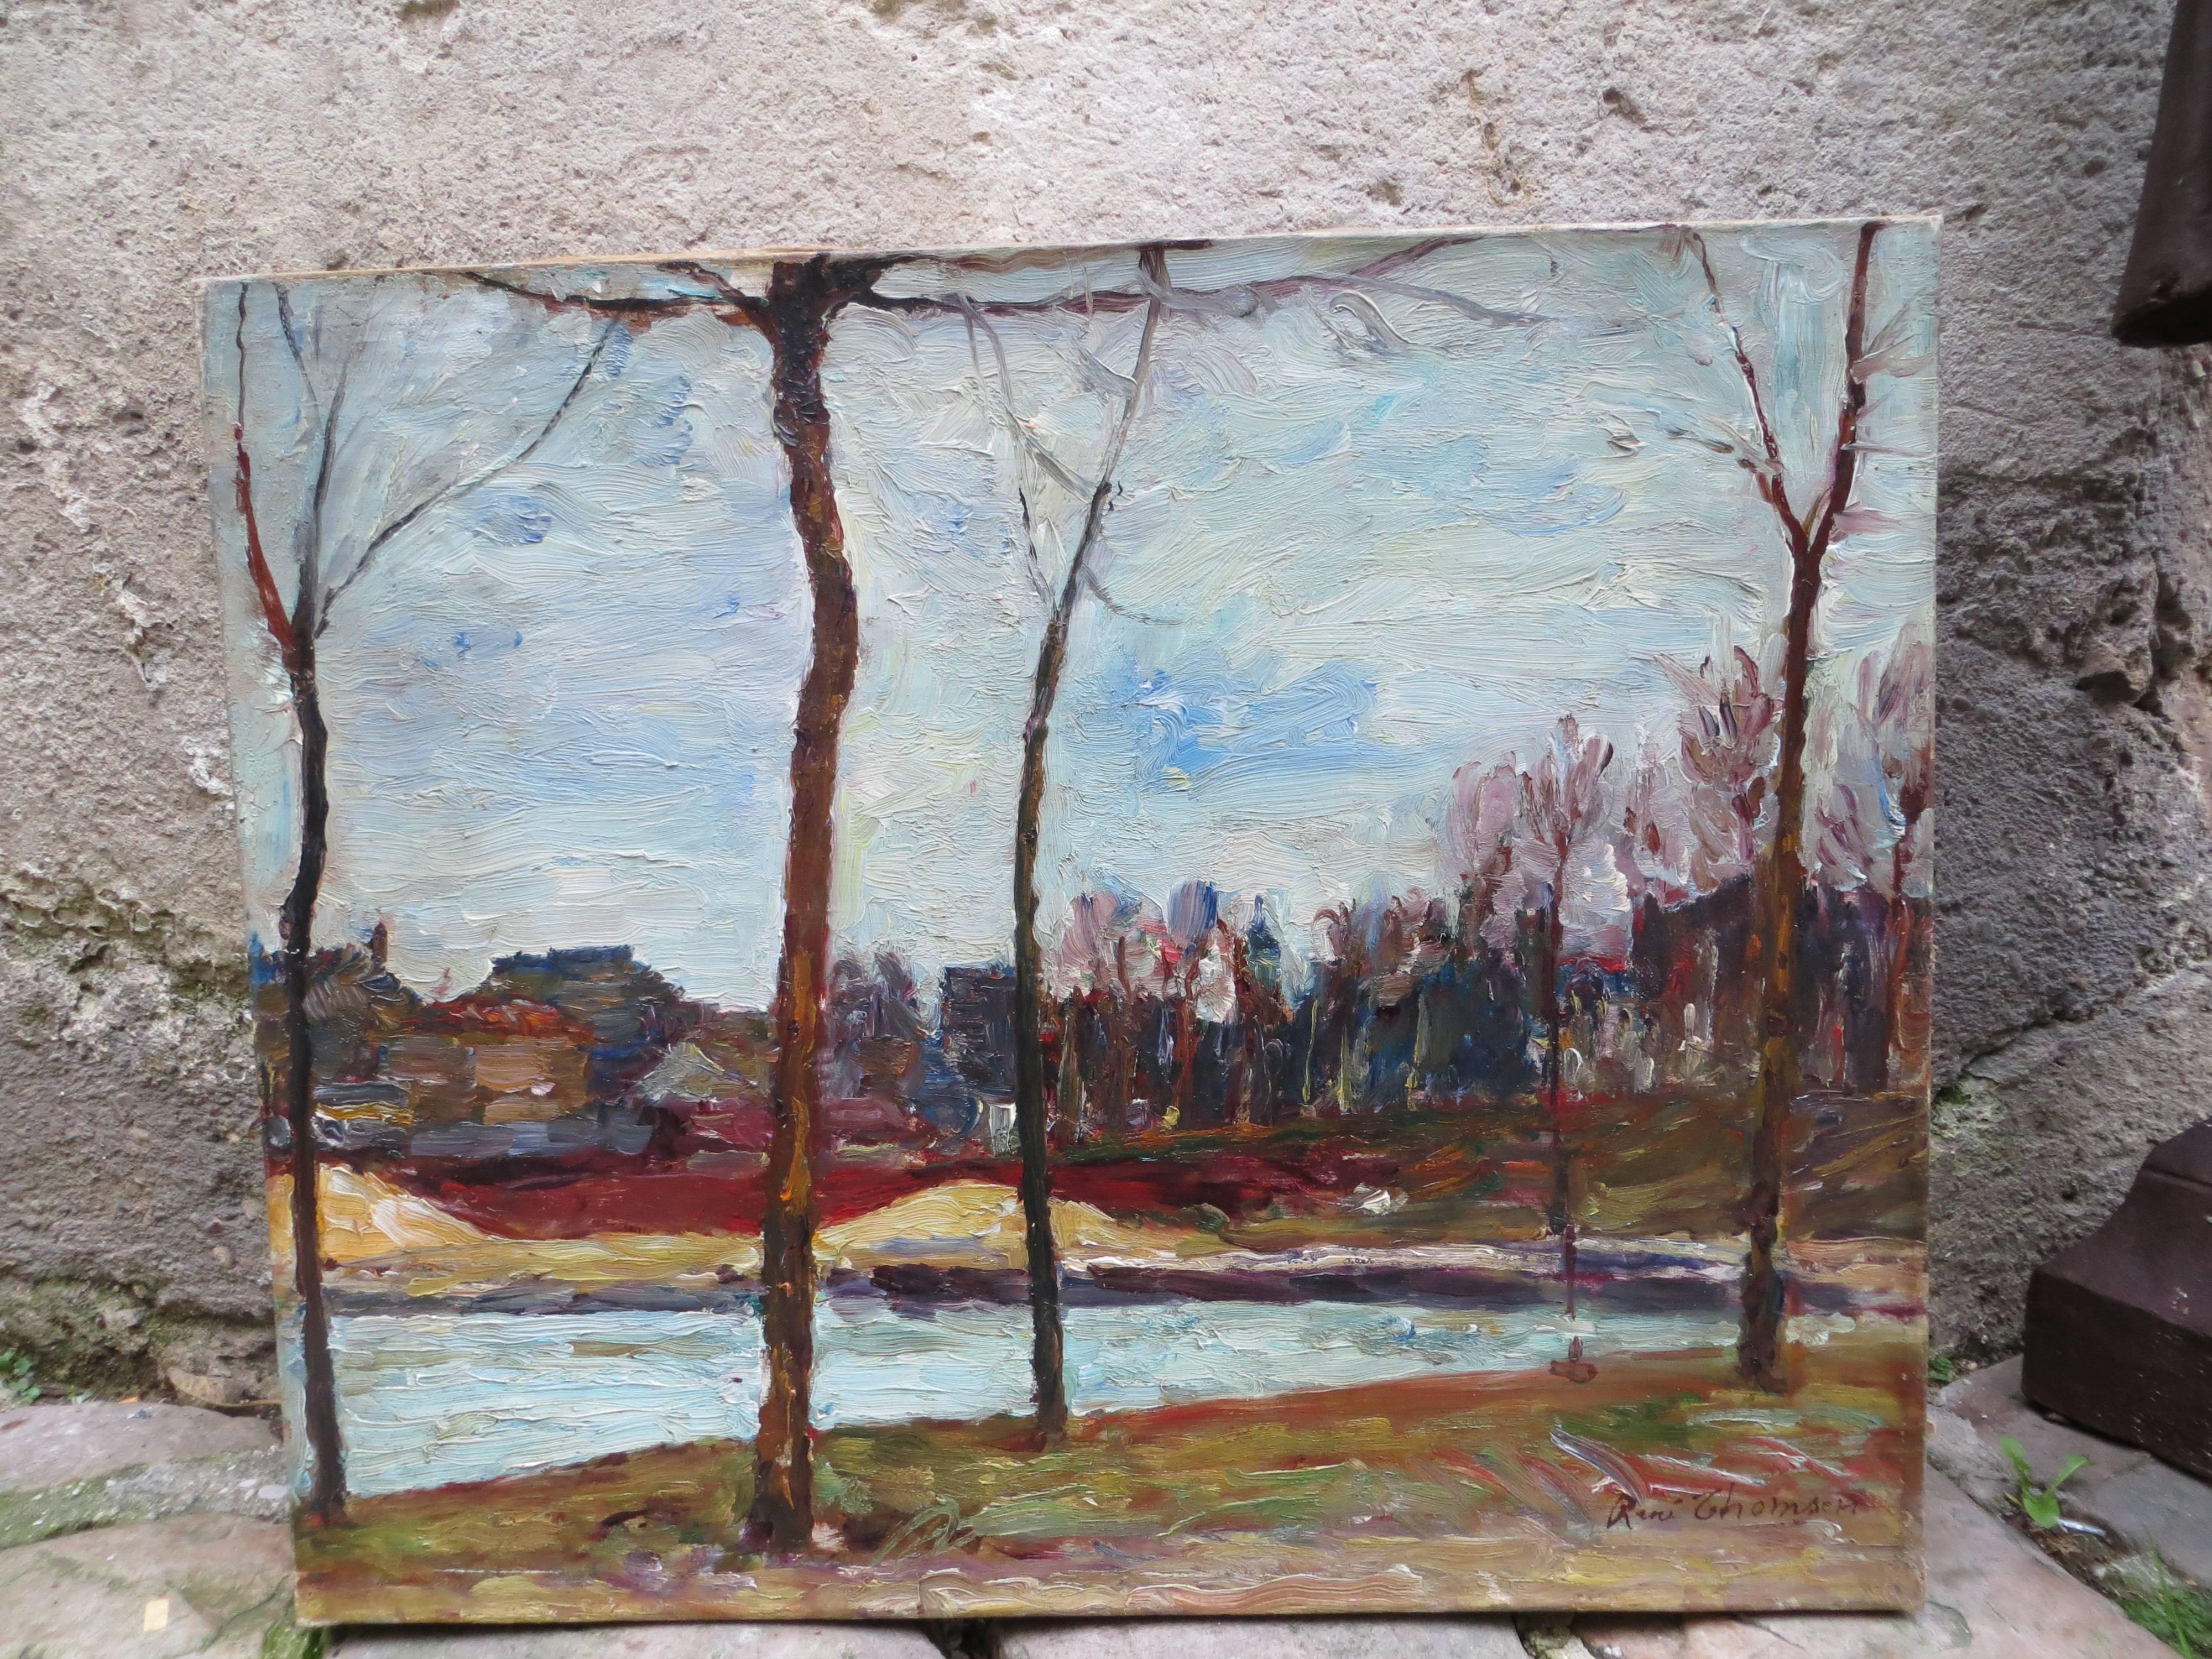 Seine-Ufer von René THOMSEN (Impressionismus), Painting, von René Thomsen